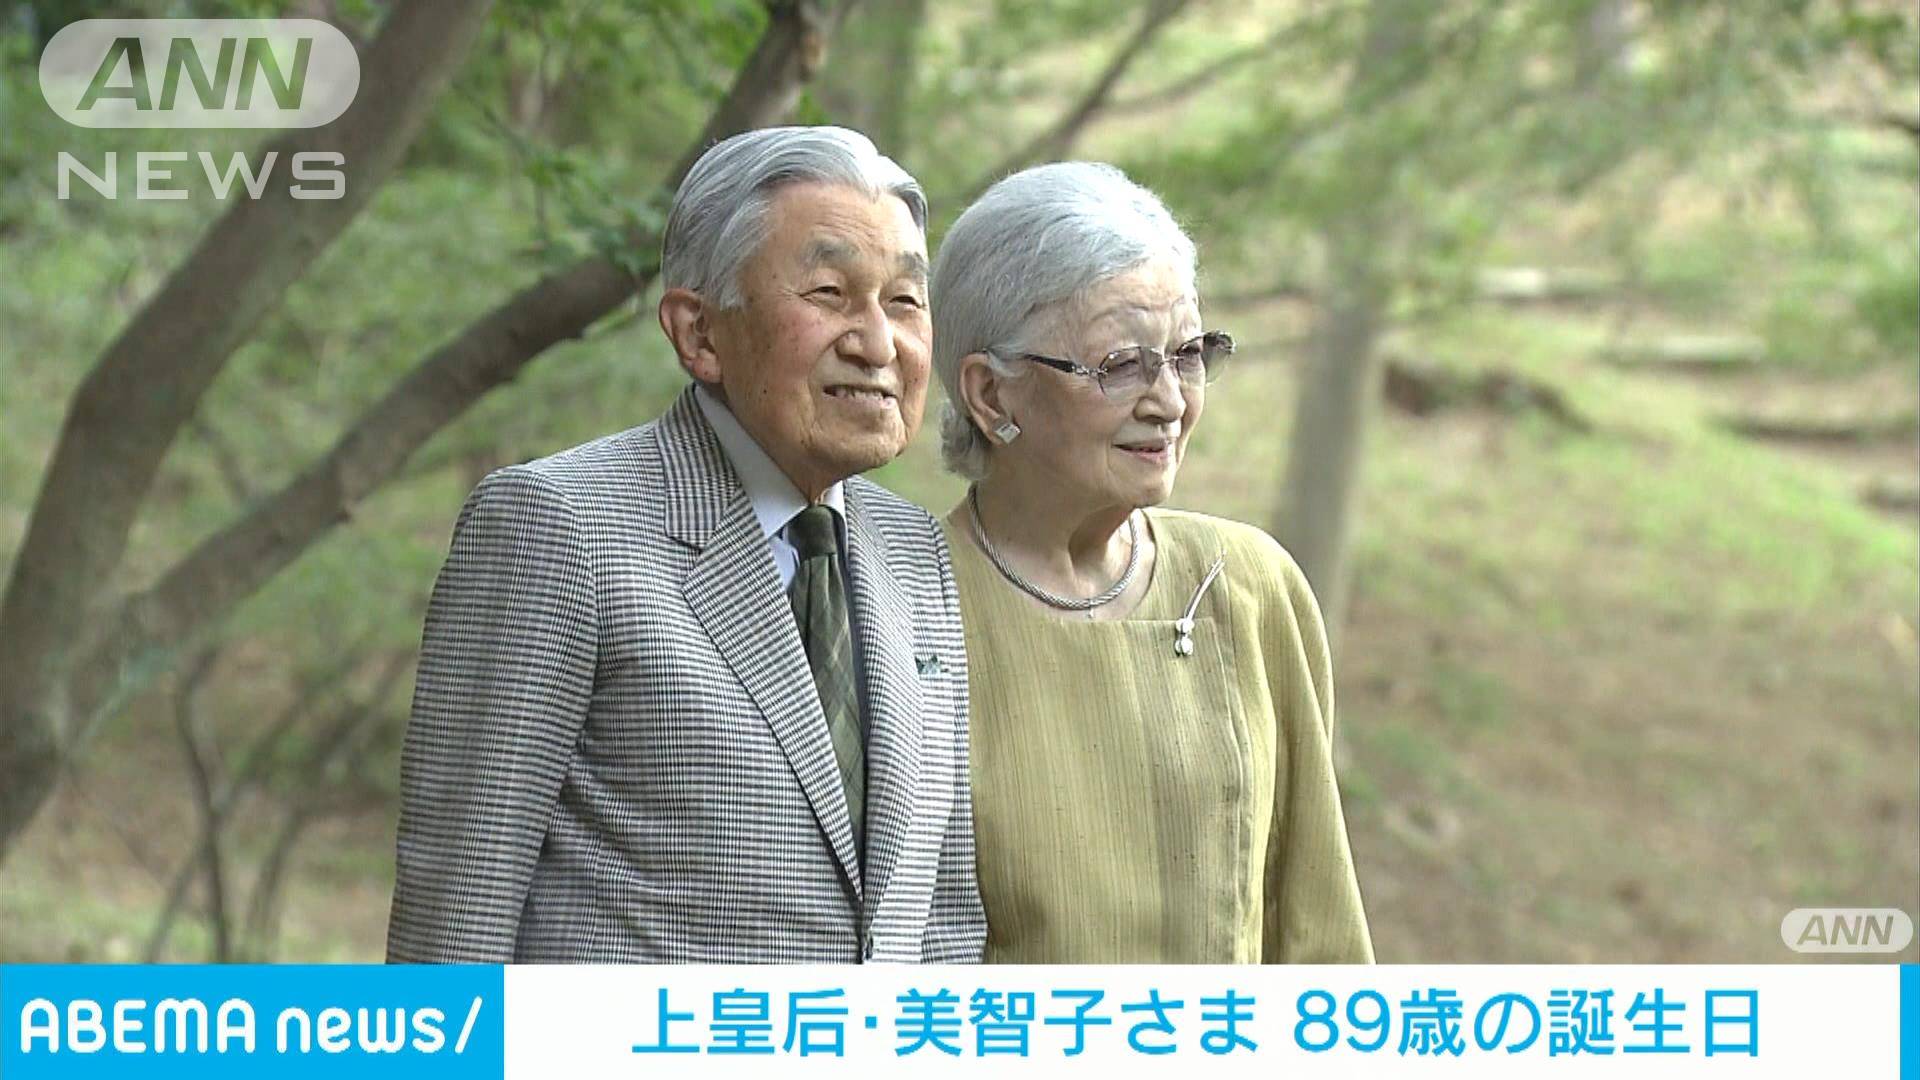 上皇后・美智子さまが89歳の誕生日　日課の散策するなど穏やかな日々お過ごしに